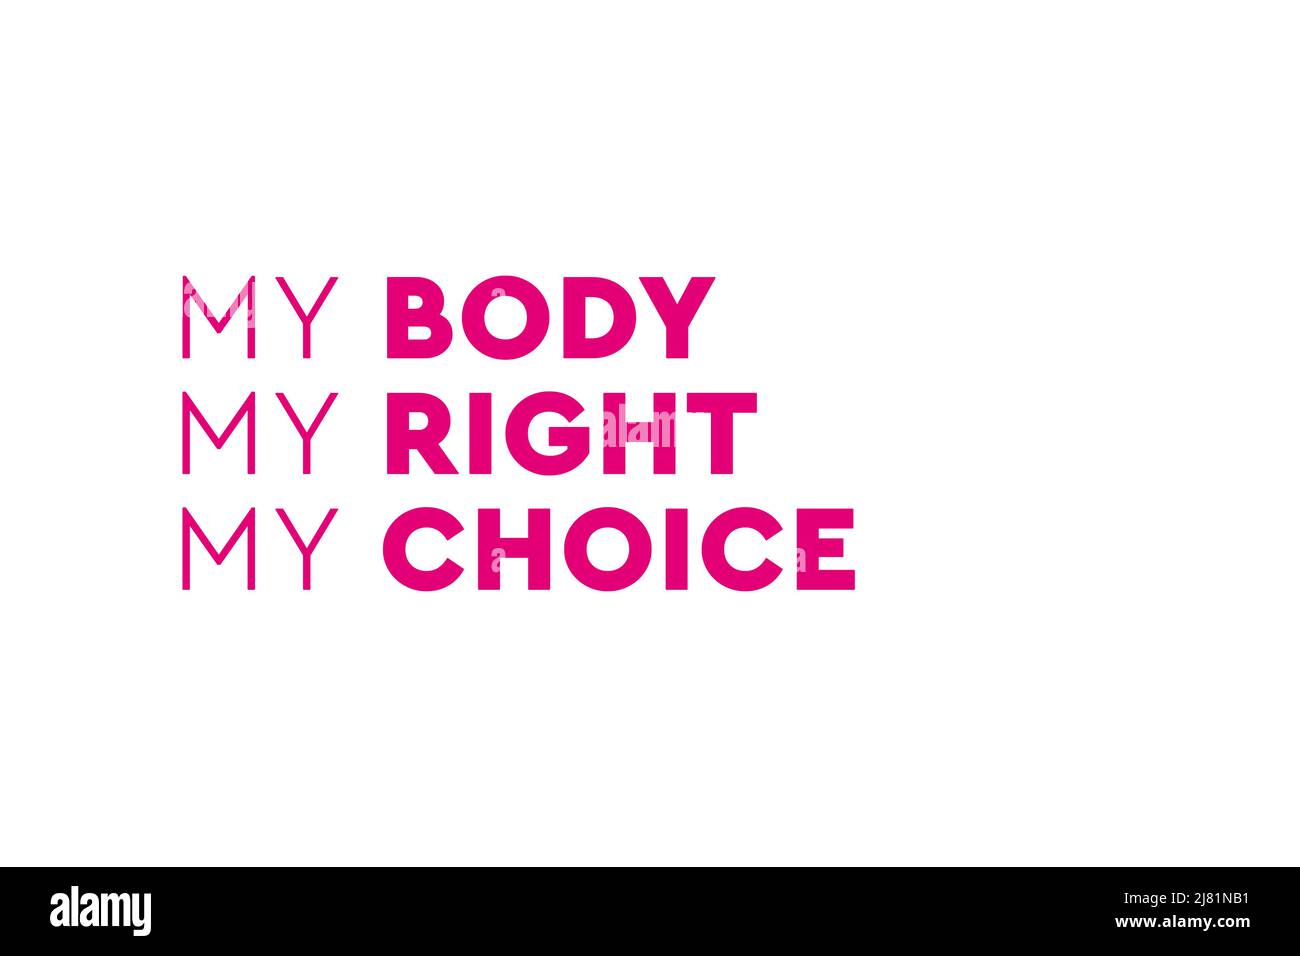 Mantenga legal el aborto. Mi cuerpo mis reglas. Póster, banner o fondo de Pro abortion Foto de stock